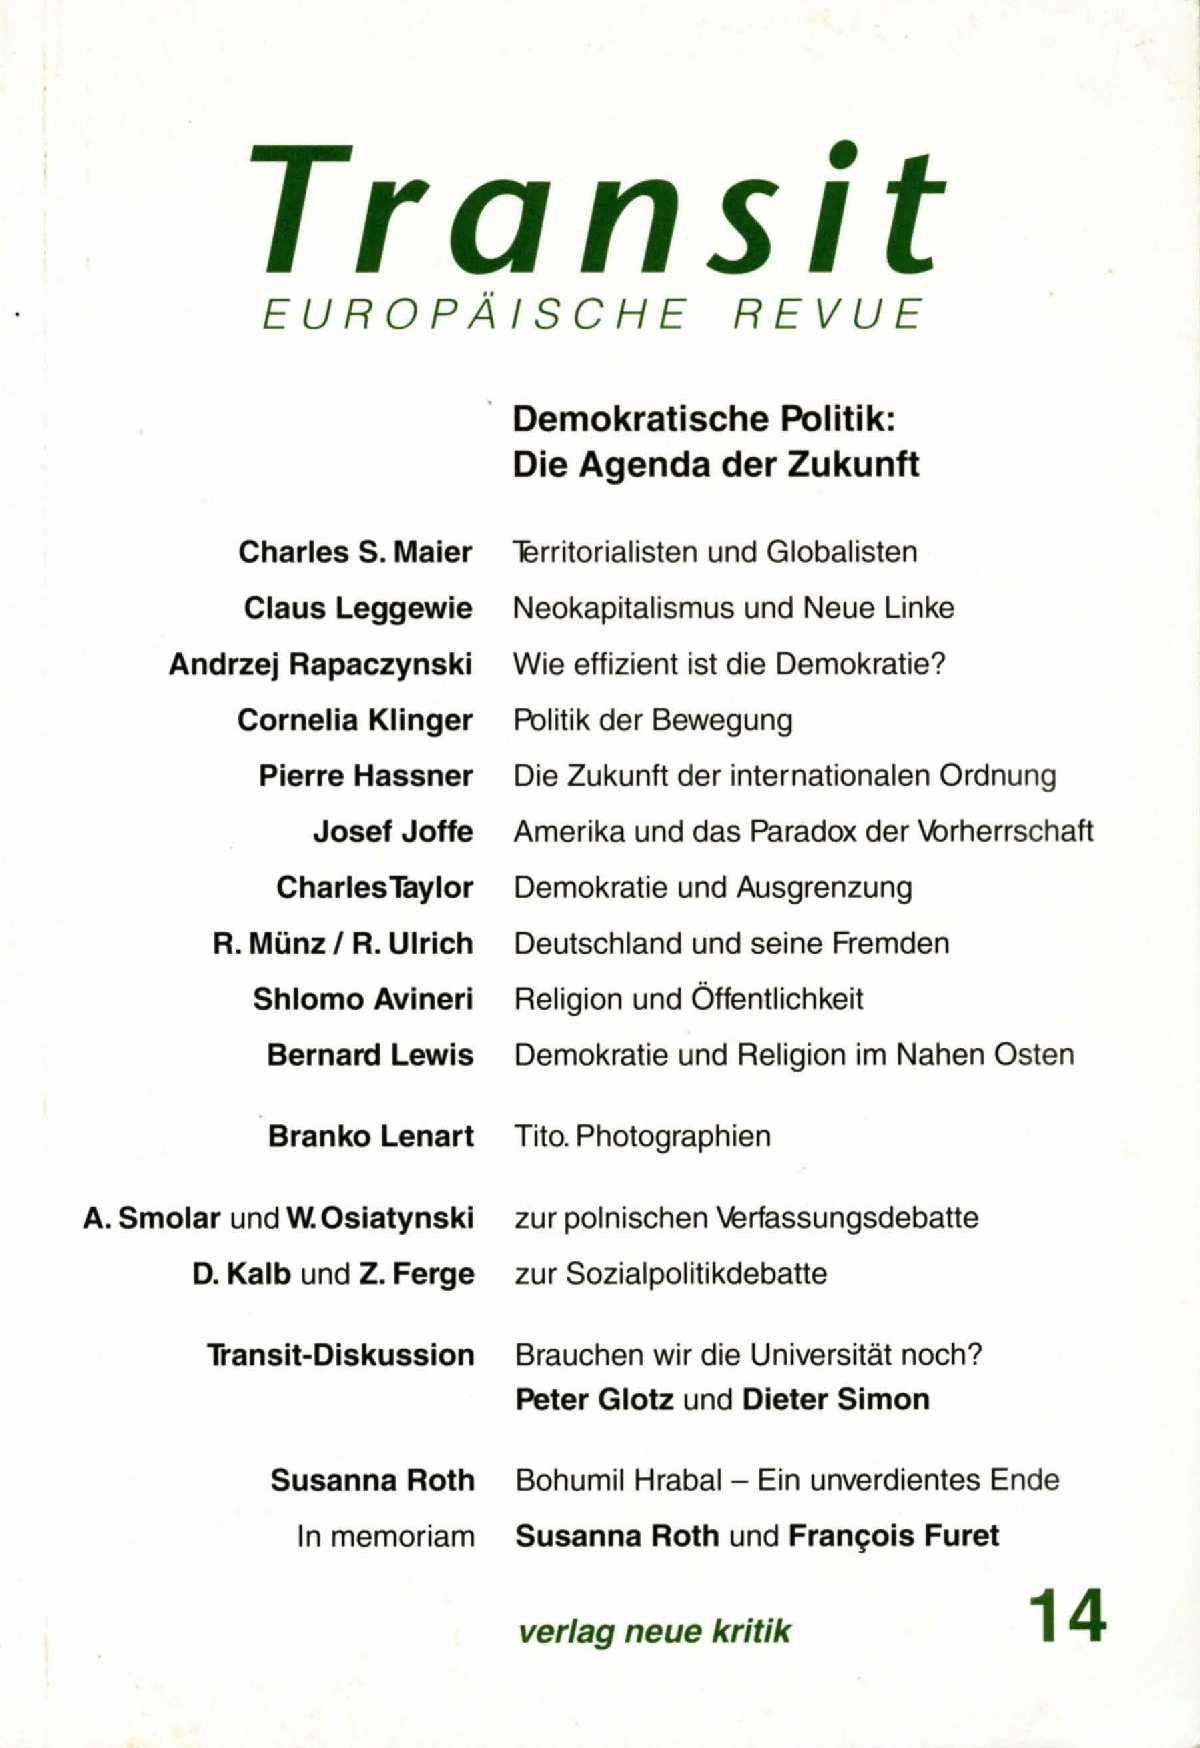 Eine kurze Geschichte der polnischen Verfassung nach 1989 Cover Image